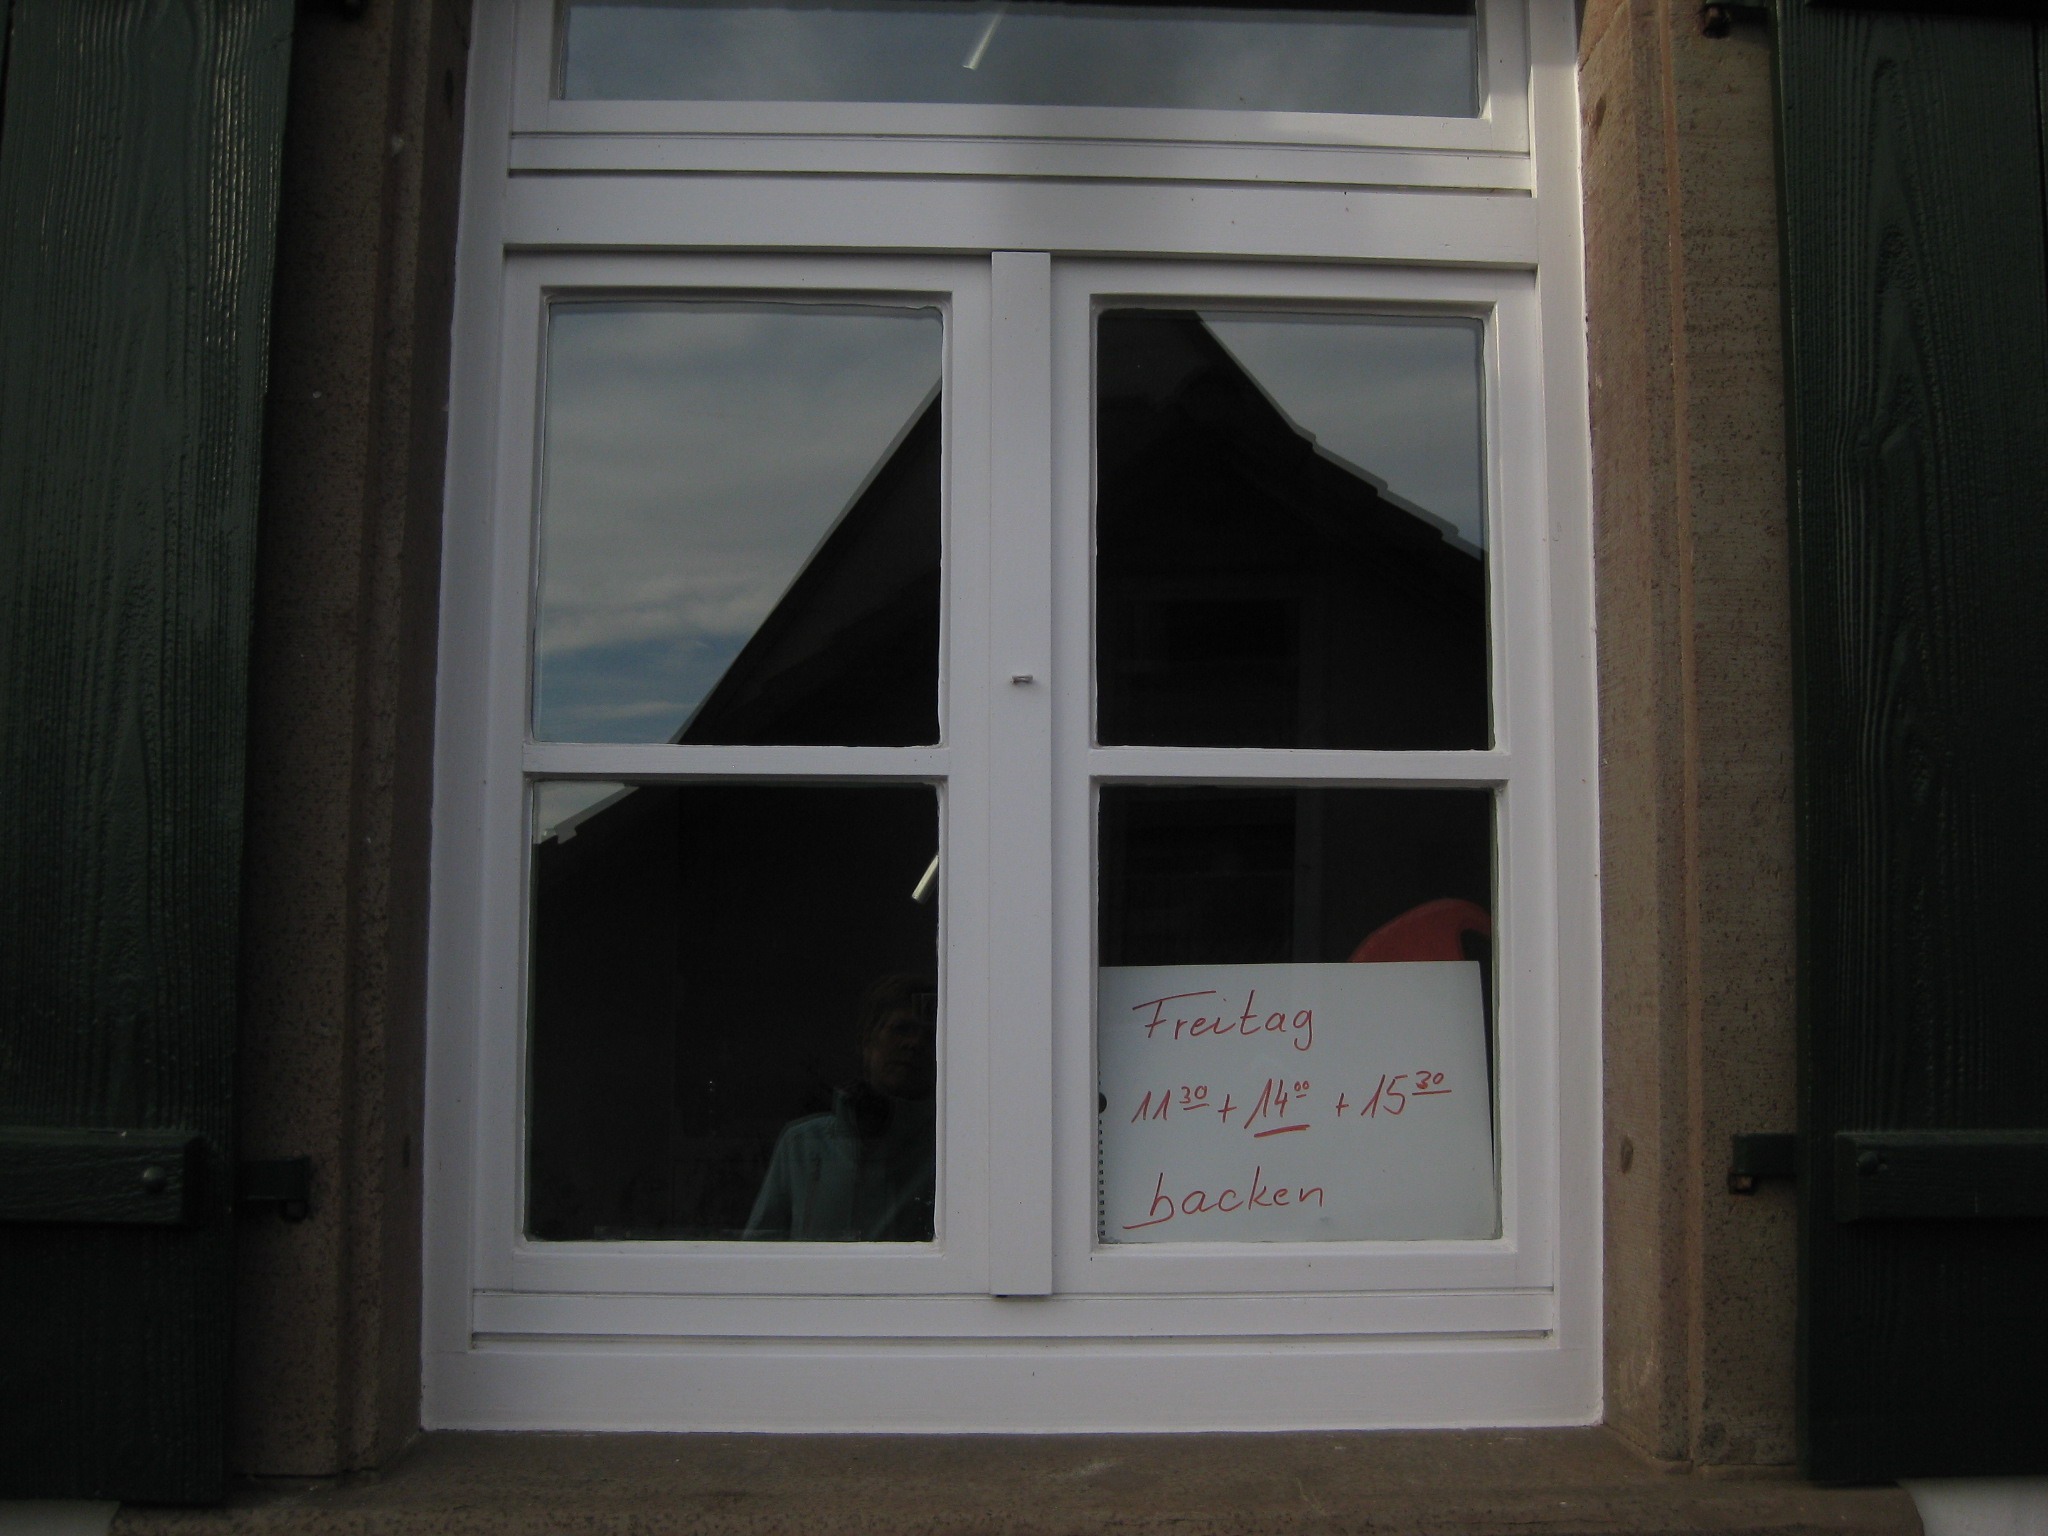  Nahaufnahme eines Fensters des Backhauses in Wiesenstetten mit den Öffnungszeiten. Freitag 11:30 Uhr, 14:00 Uhr und 15:30 Uhr - das Bild mit Klick vergrößern 